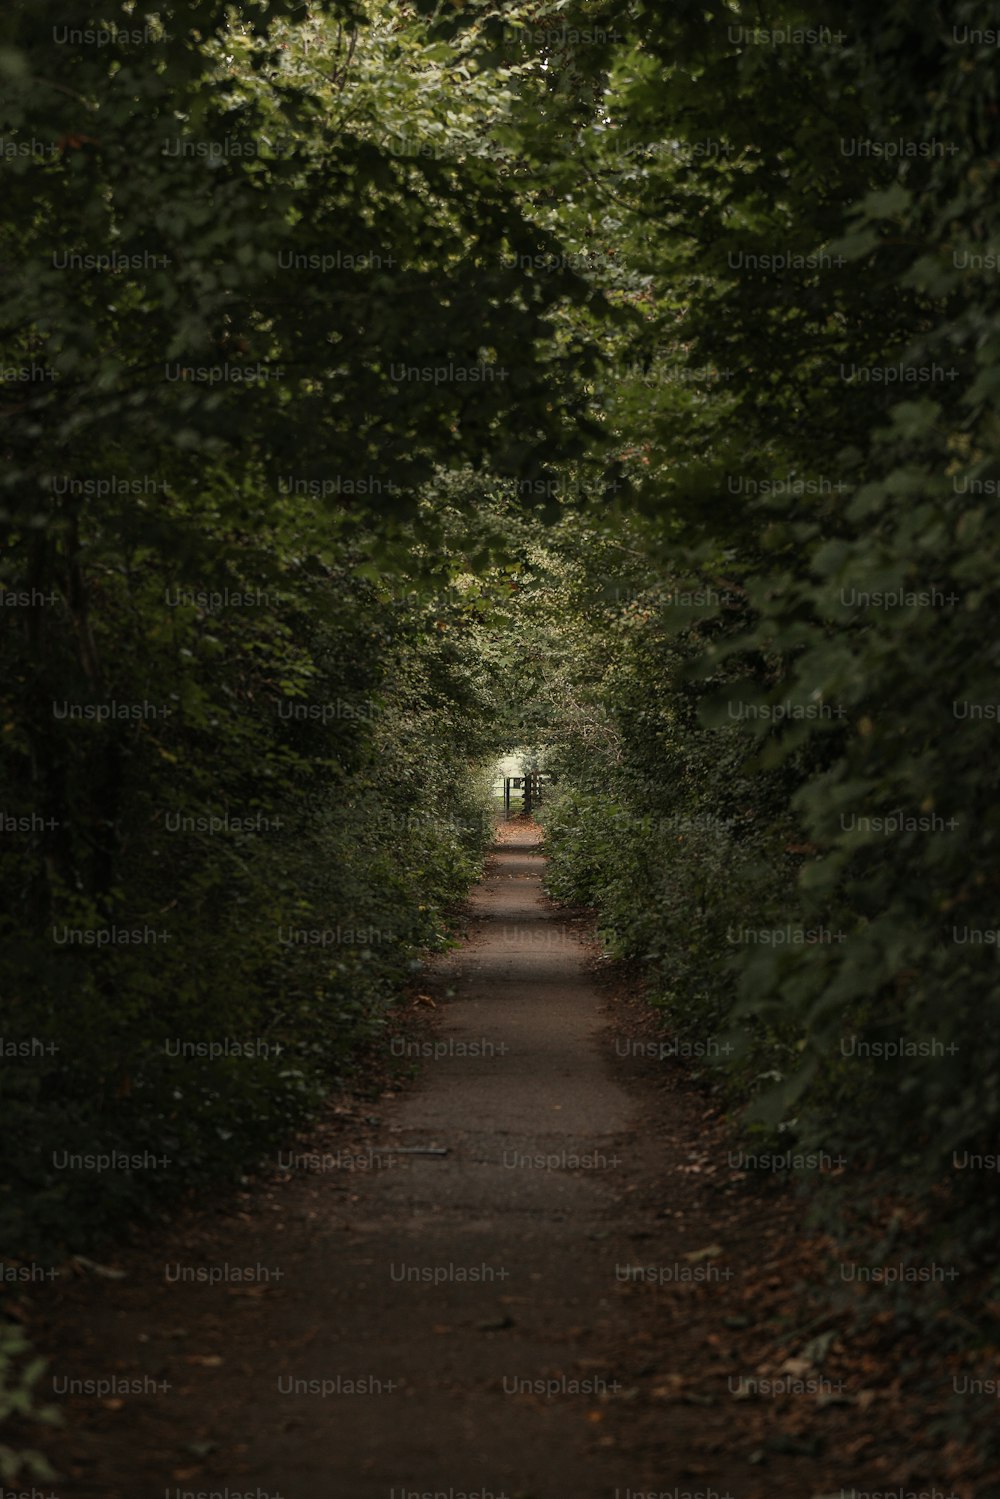 Un camino estrecho en medio de un bosque